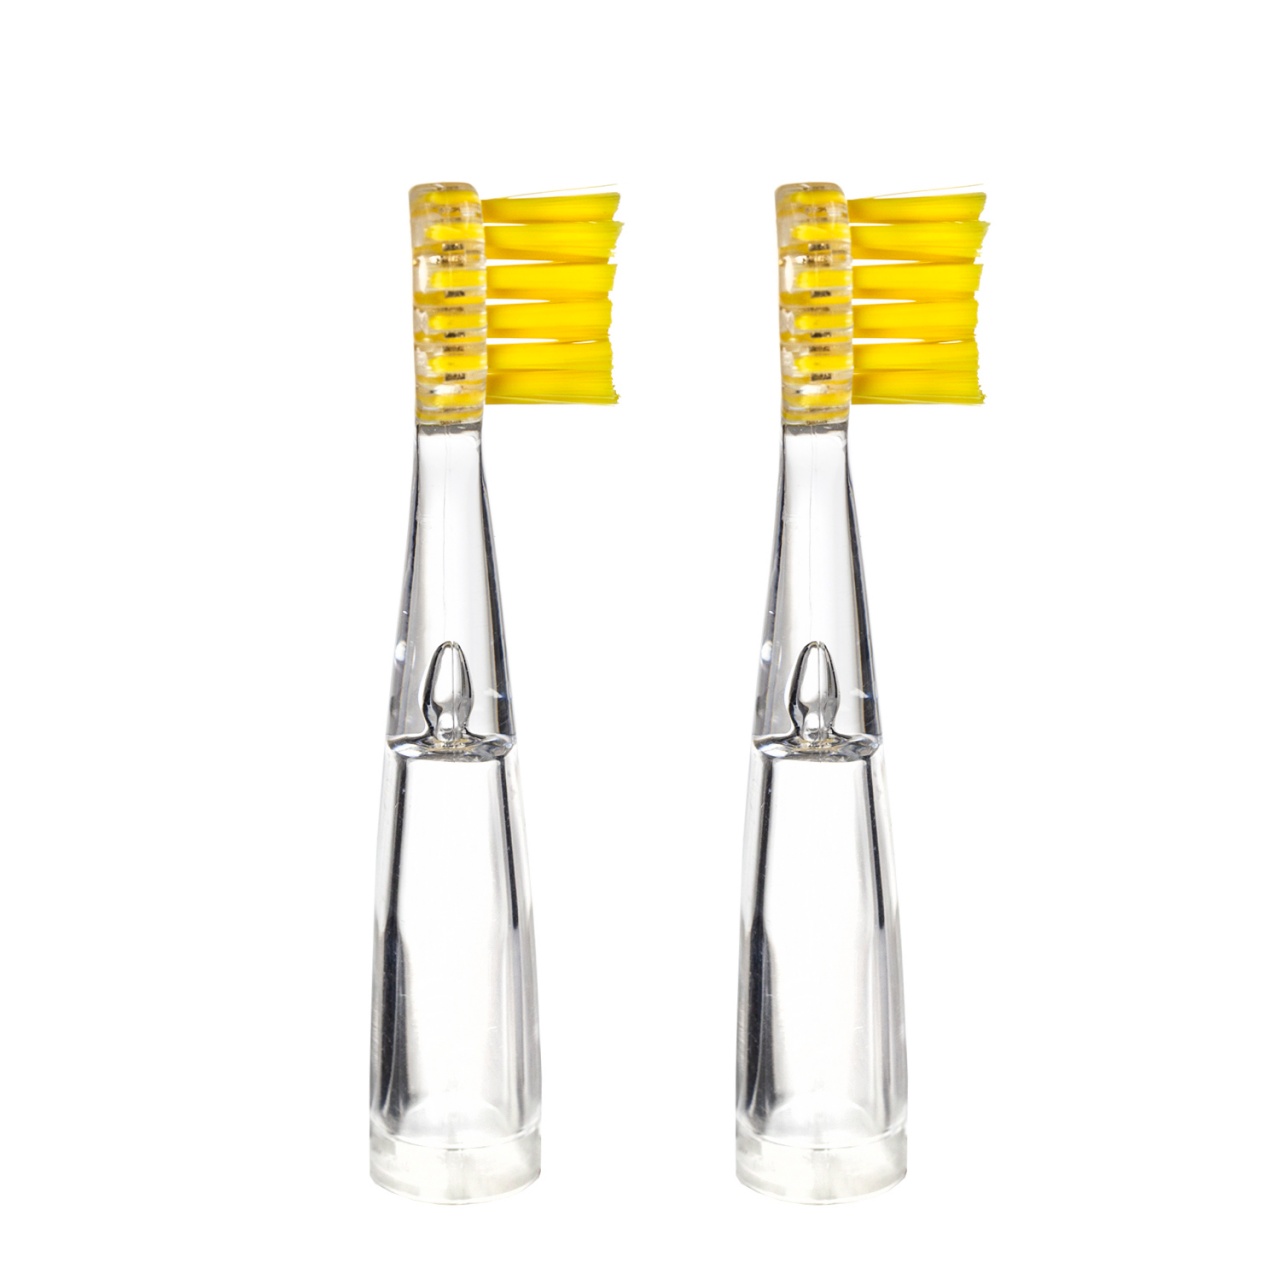 Электрическая зубная щетка Revyline RL 025 детская, желтая